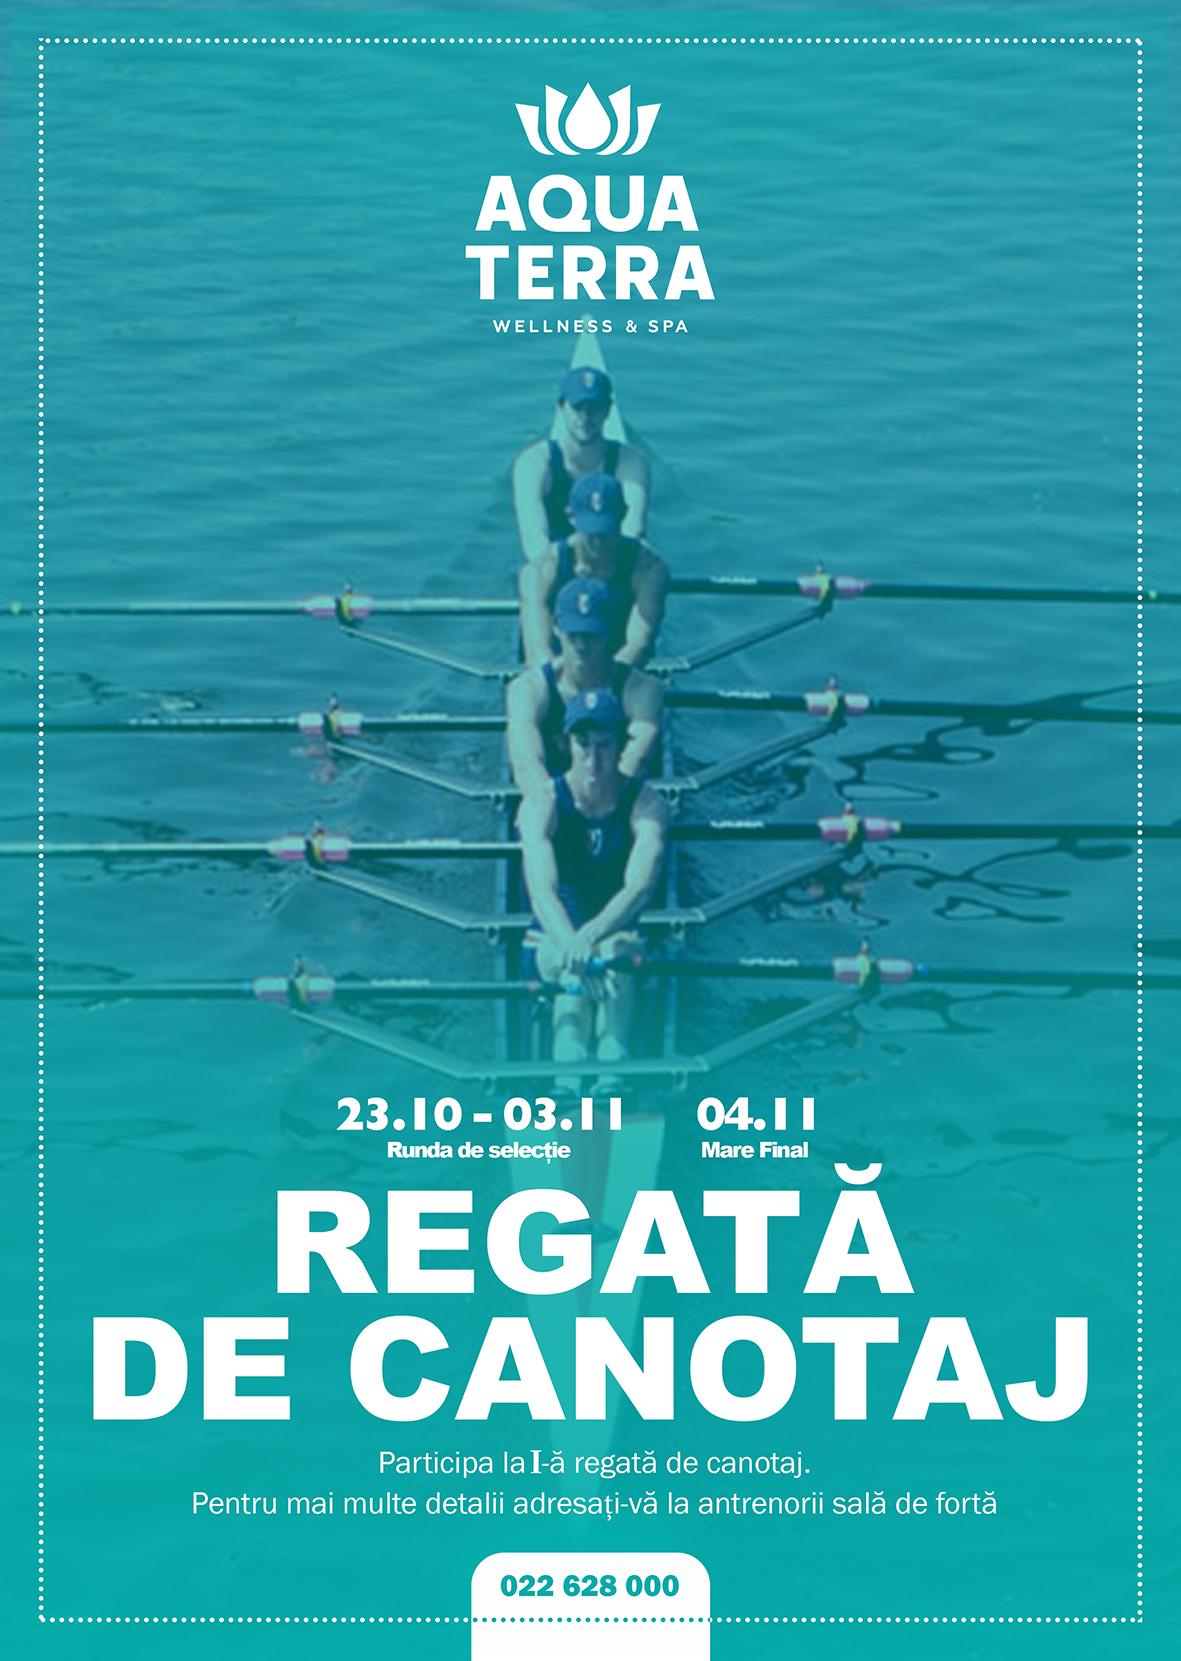 Încercați-vă forțele la o regată de canotaj organizată de Aquaterra Wellness & SPA